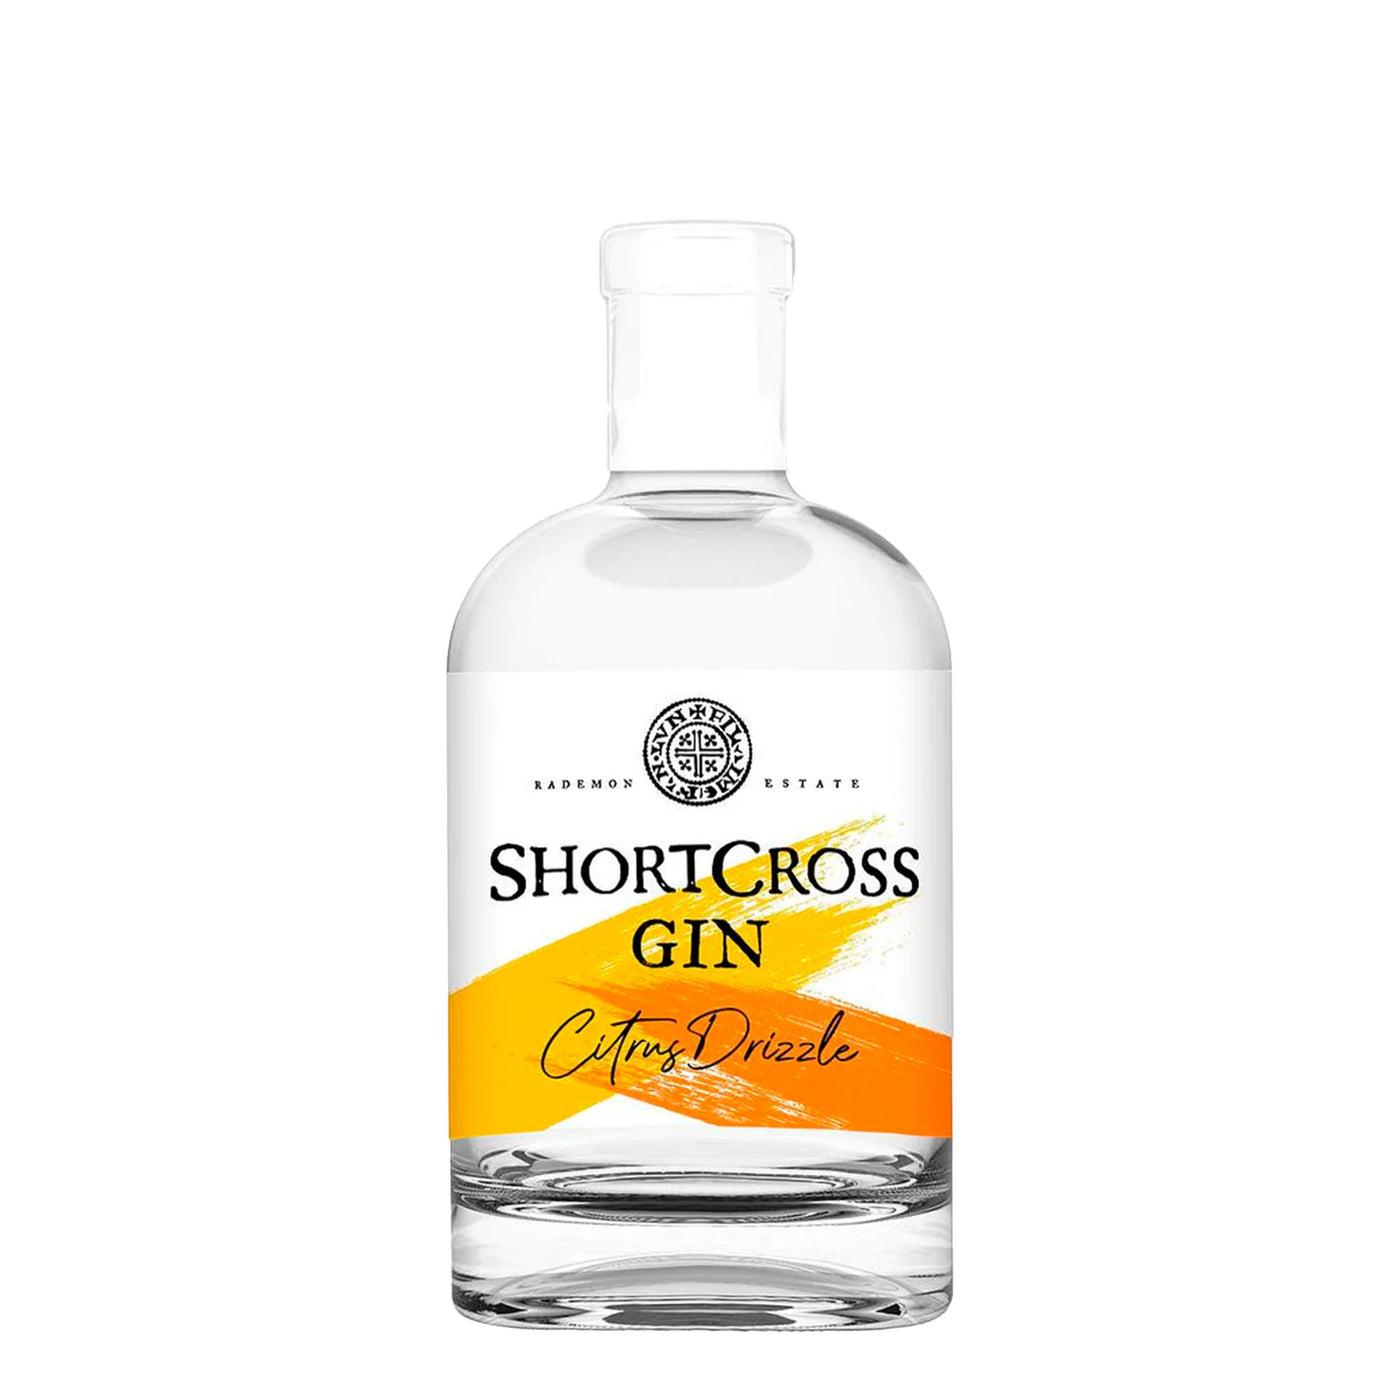 Shortcross Citrus Drizzle Gin